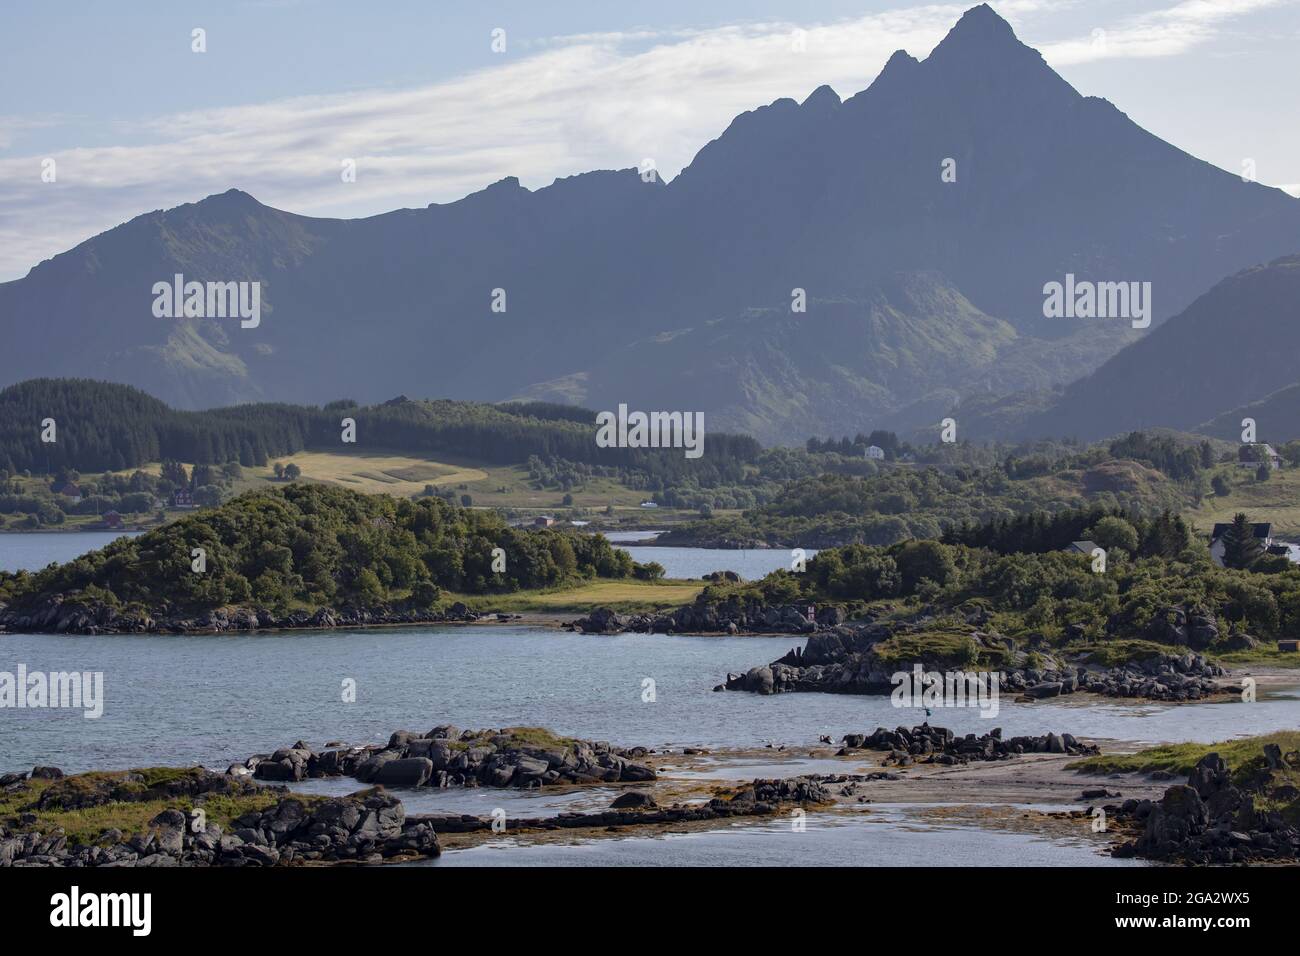 Abgelegene Siedlung von Gravdal mit abgeschotteten Berggipfeln in der Ferne auf der Insel Vestvagoya auf den Lofoten-Inseln; Lofoten, Nordland, Norwegen Stockfoto